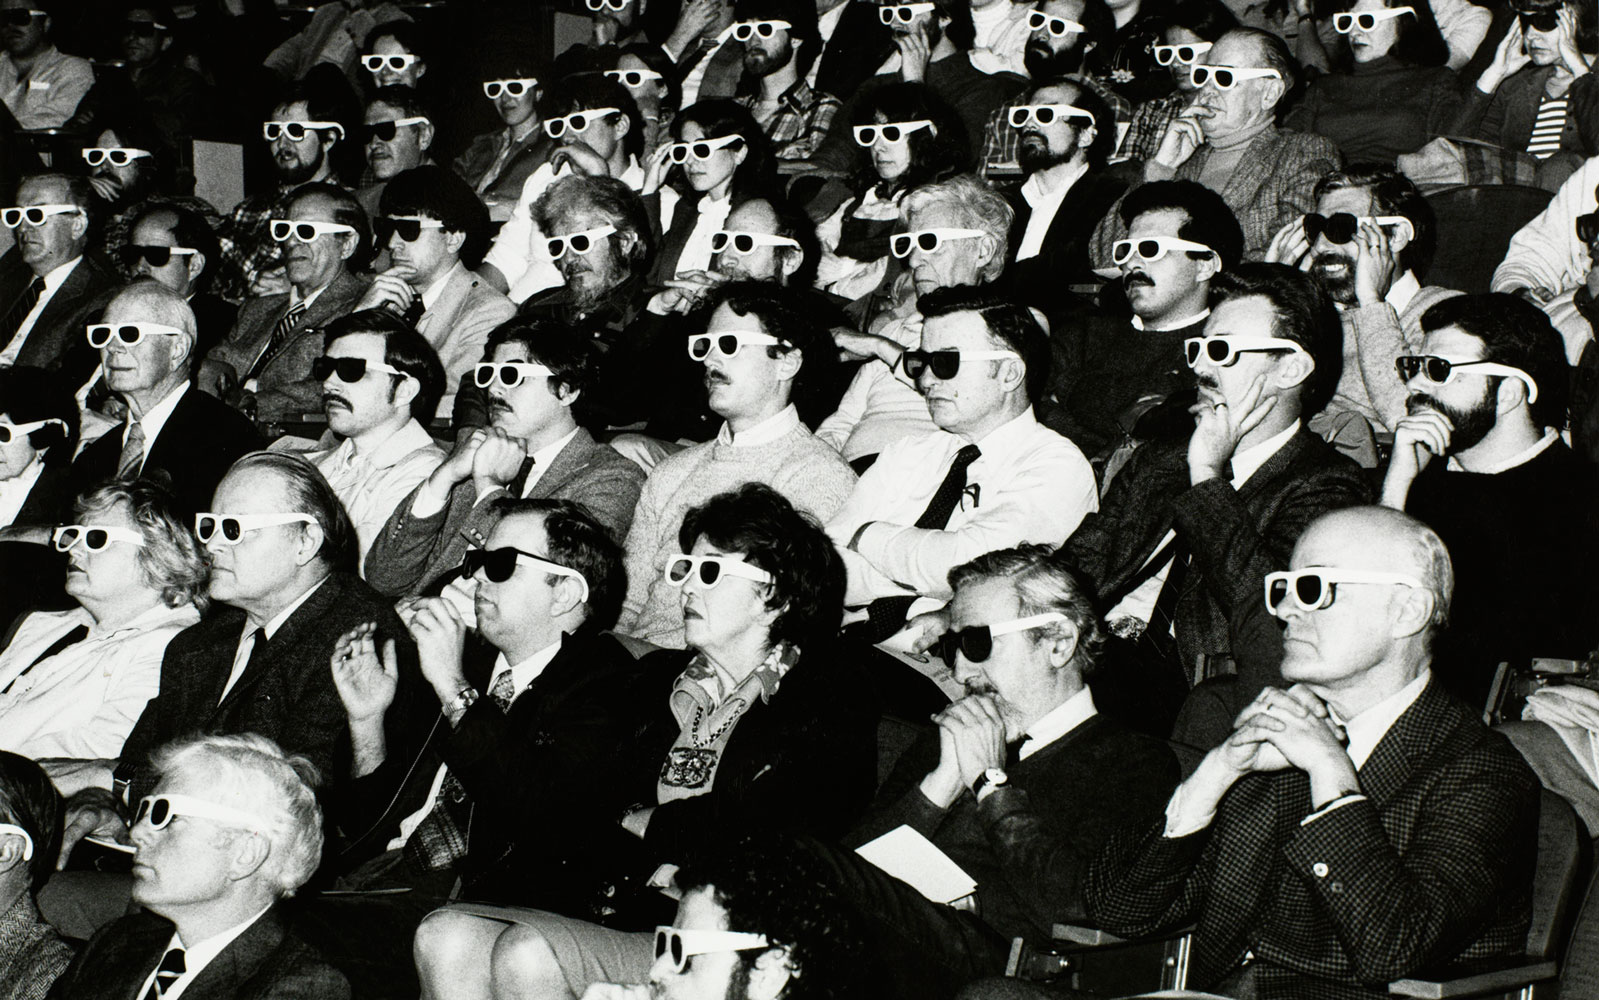 Espectadors amb ulleres 3D, 1980-1995